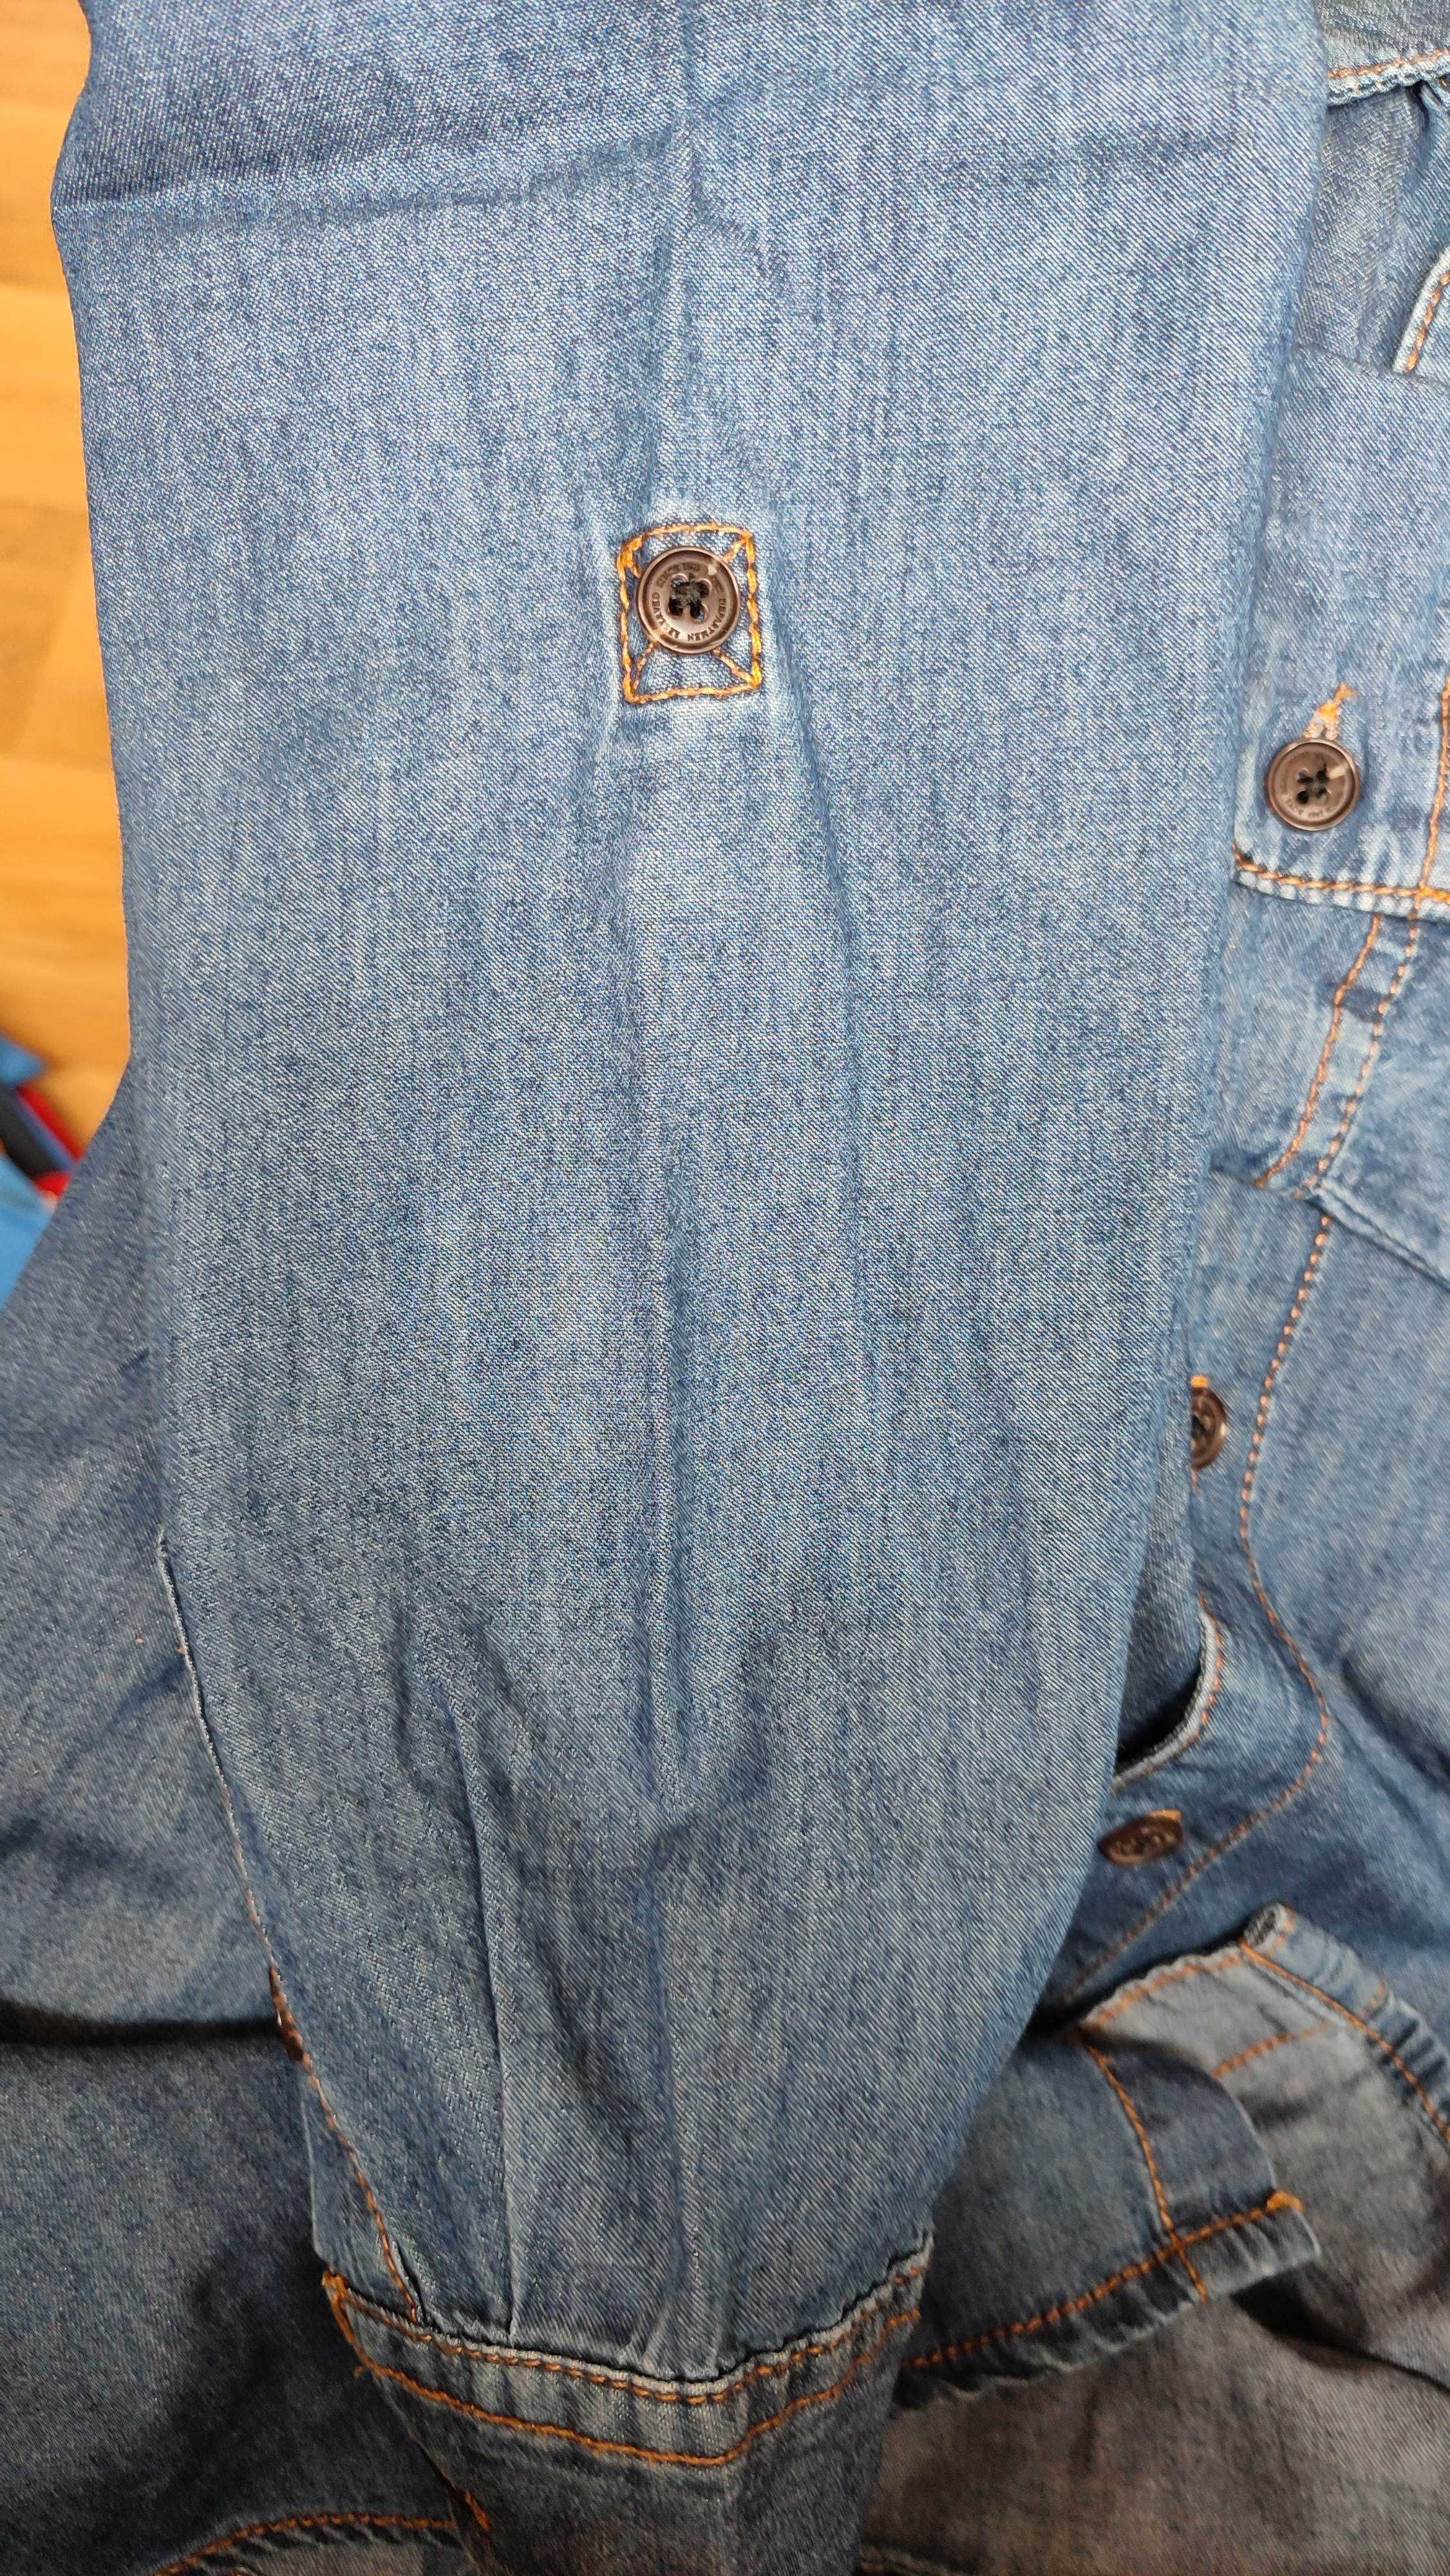 Koszula jeansowa, Reserved, chłopięca, r. 140